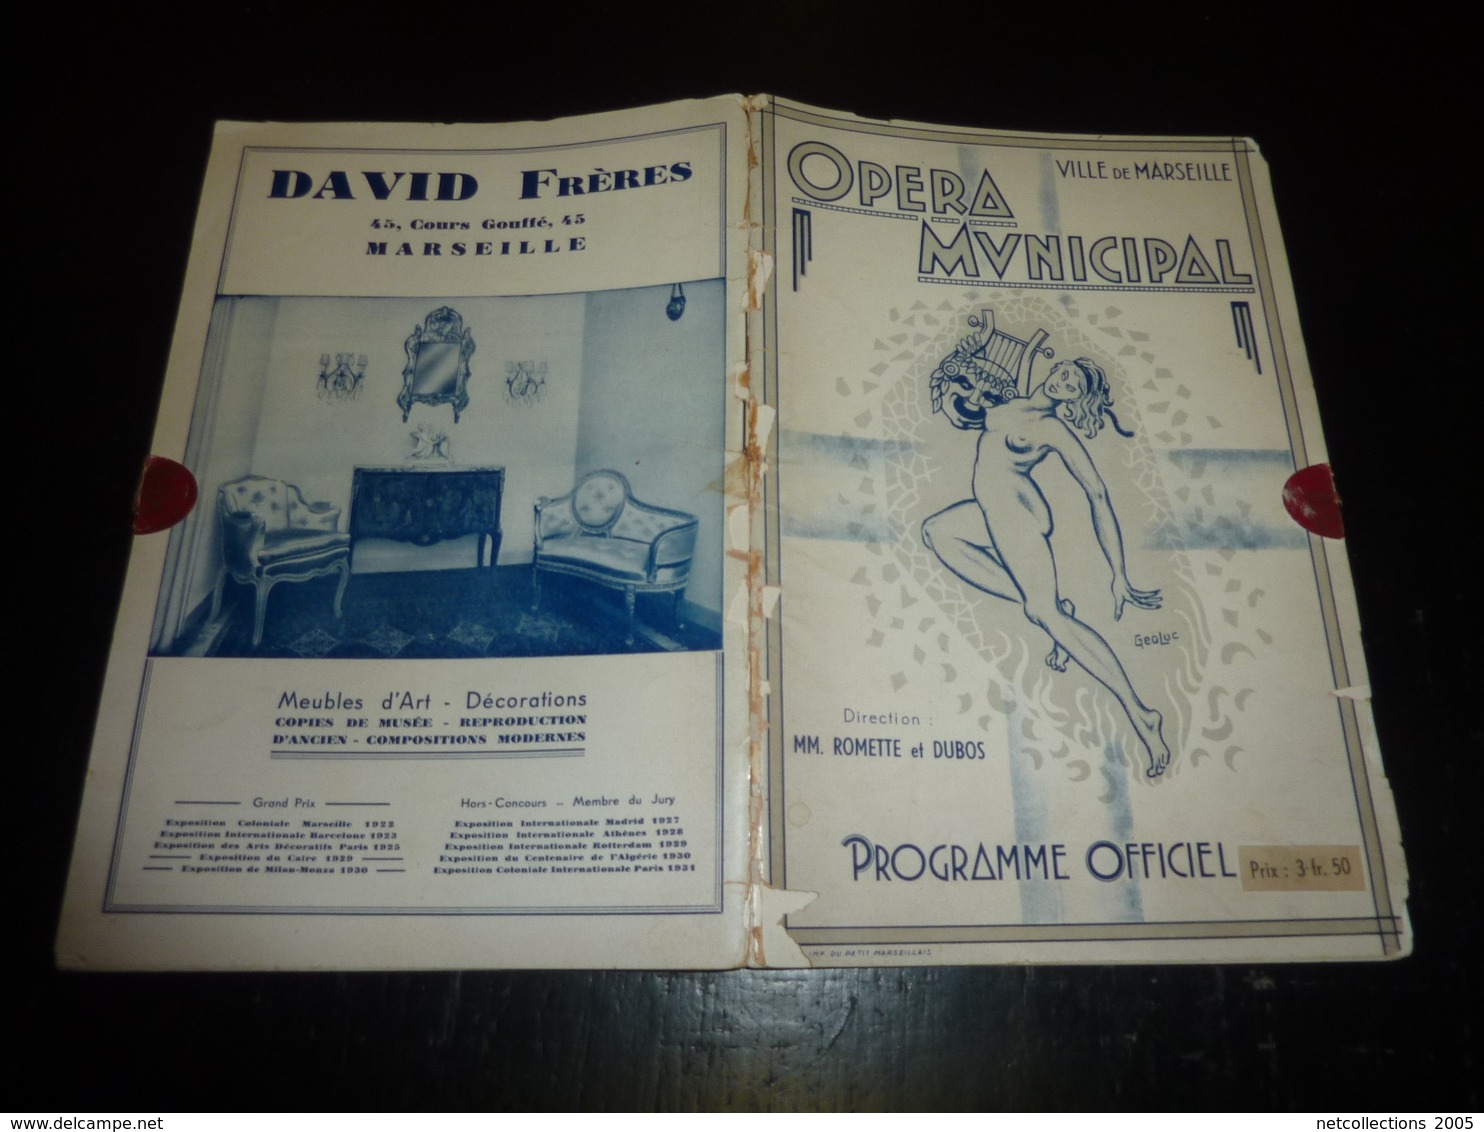 JOSEPHINE BAKER ;OPERA MUNICIPAL VILLE DE MARSEILLE, PROGRAMME OFFICIEL - Saison Lyrique 1940-1941 - Illustrée (AD) - Programmes